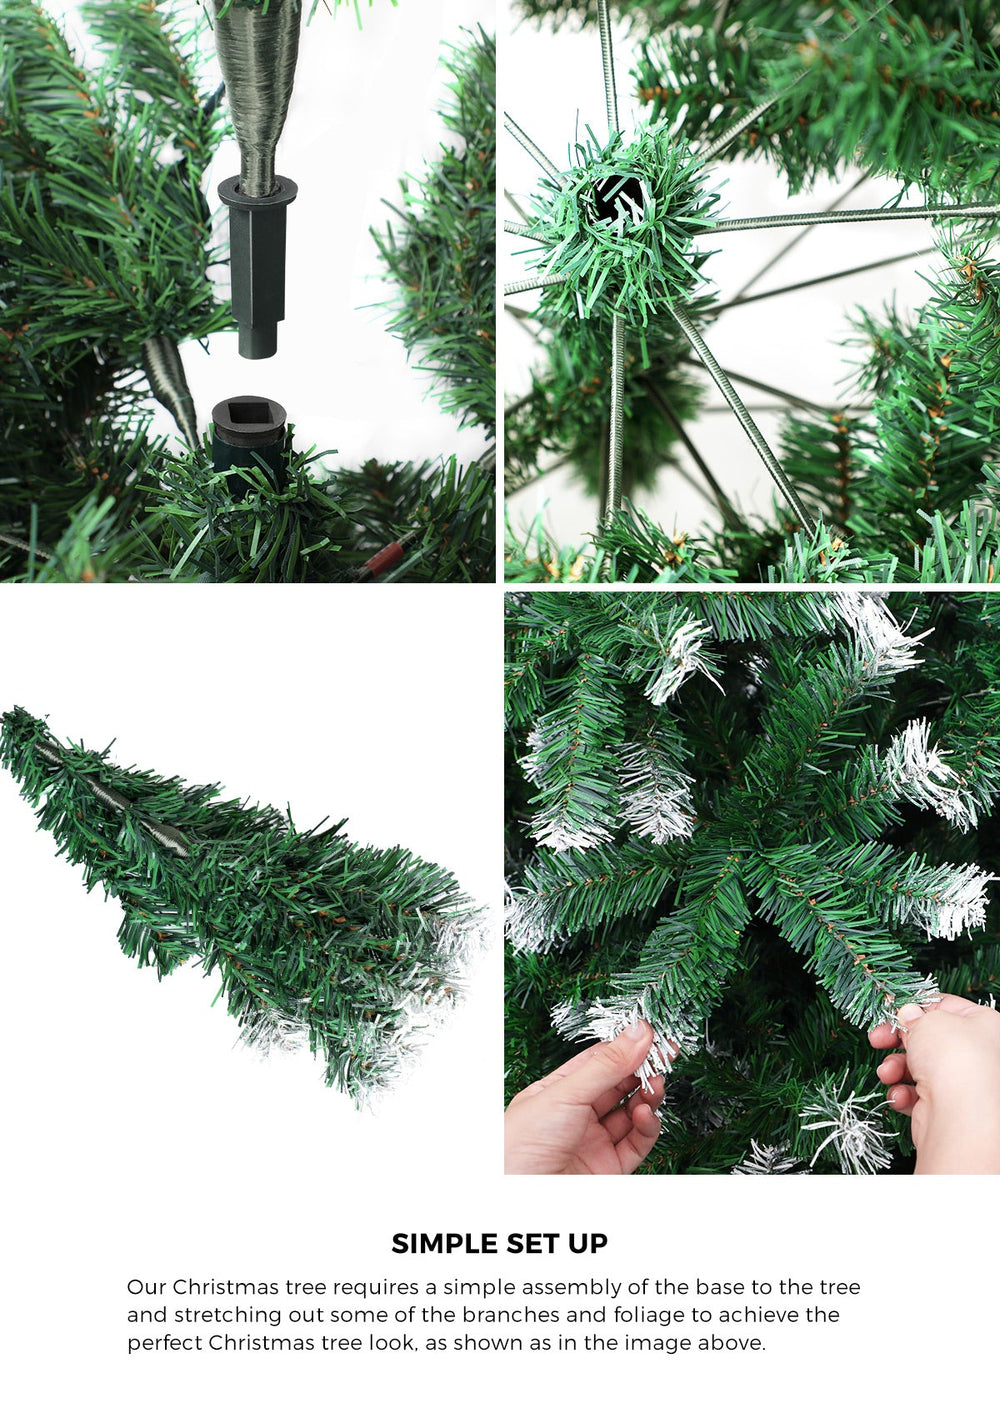 Mazam Christmas Tree 2.1M 7FT Xmas Trees Snowy Decorations Green 1050 Tips